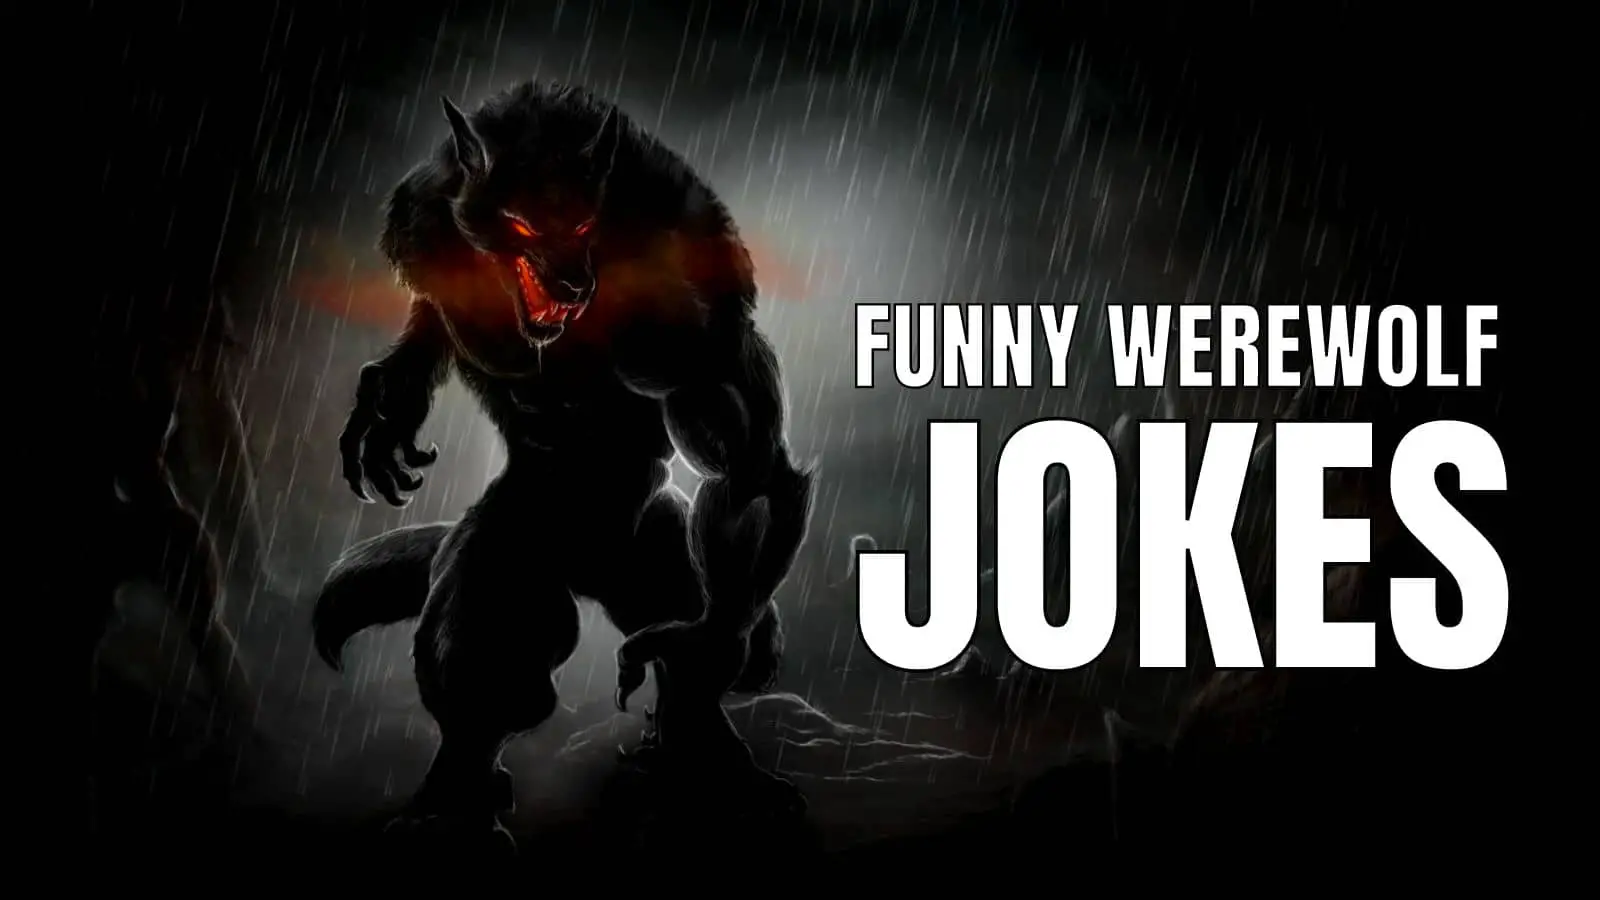 Funny Werewolf Jokes On Halloween